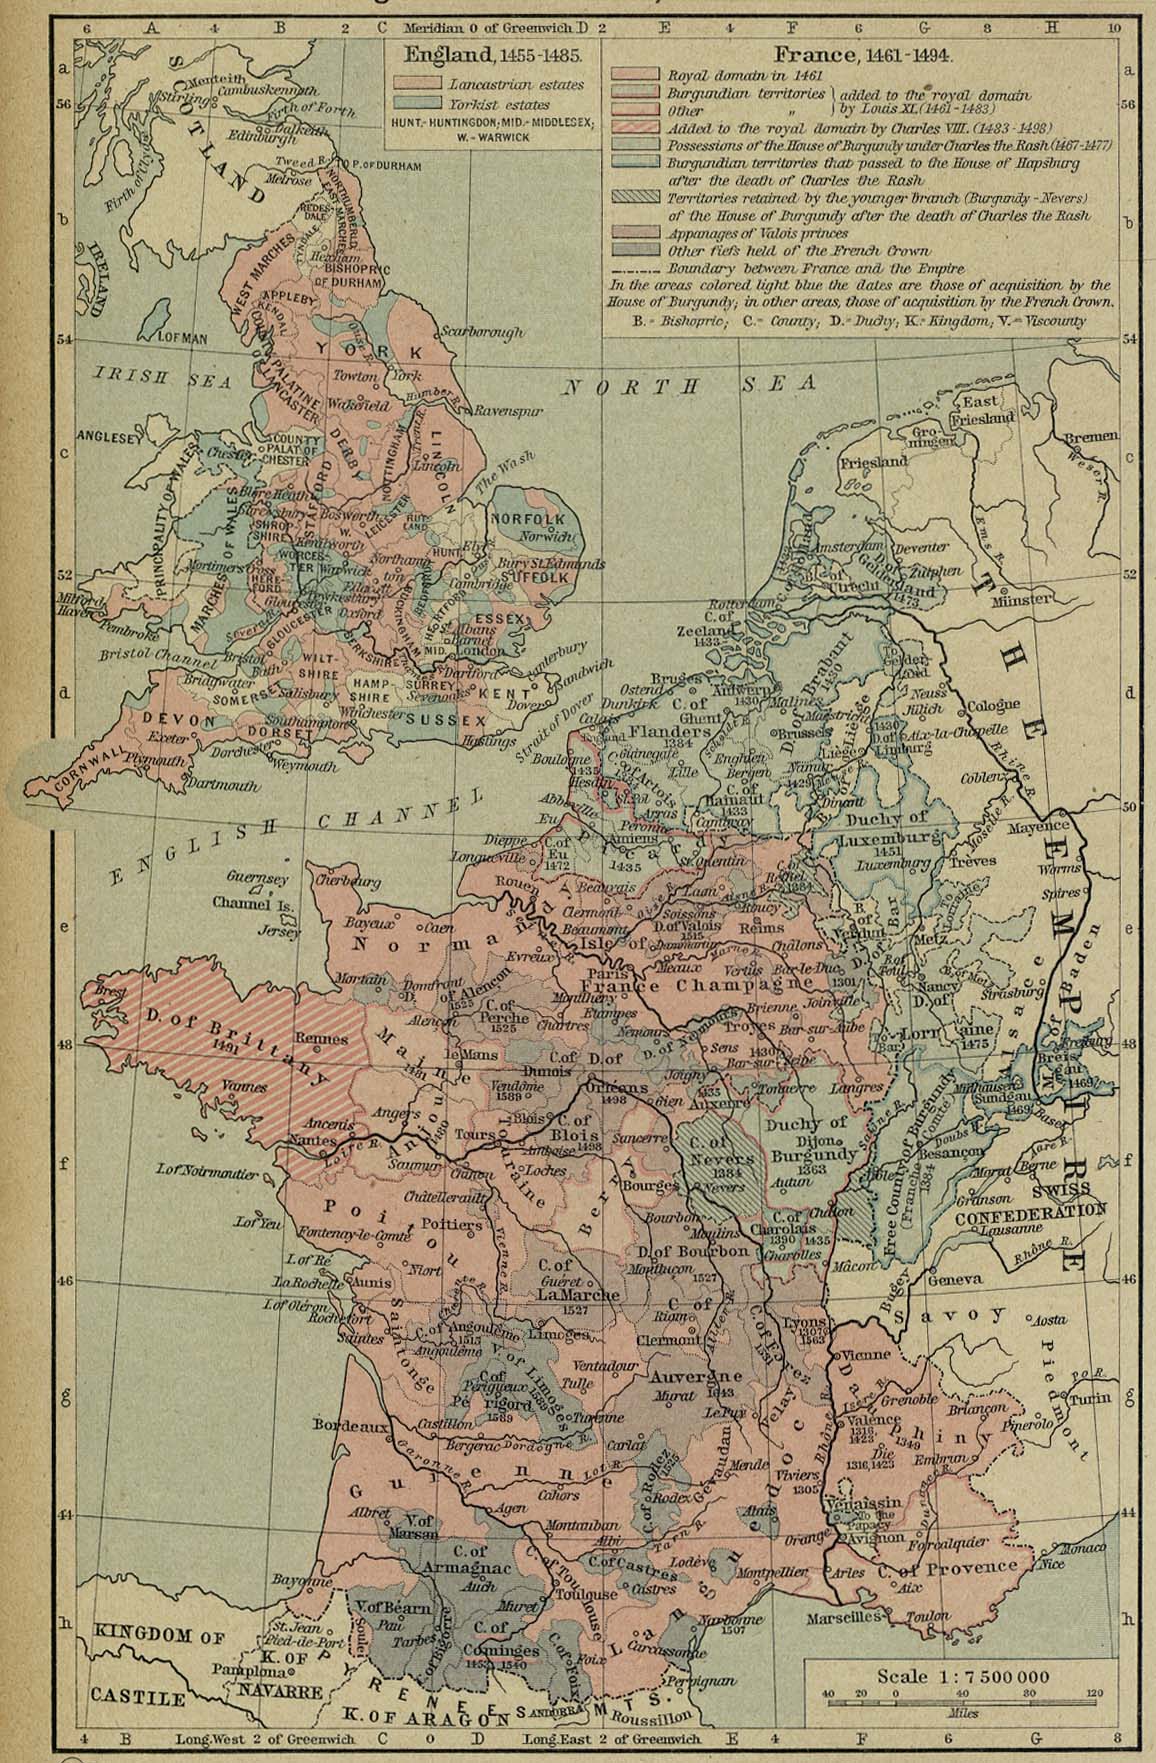 Mapa de Francia y Inglaterra, 1455 - 1494